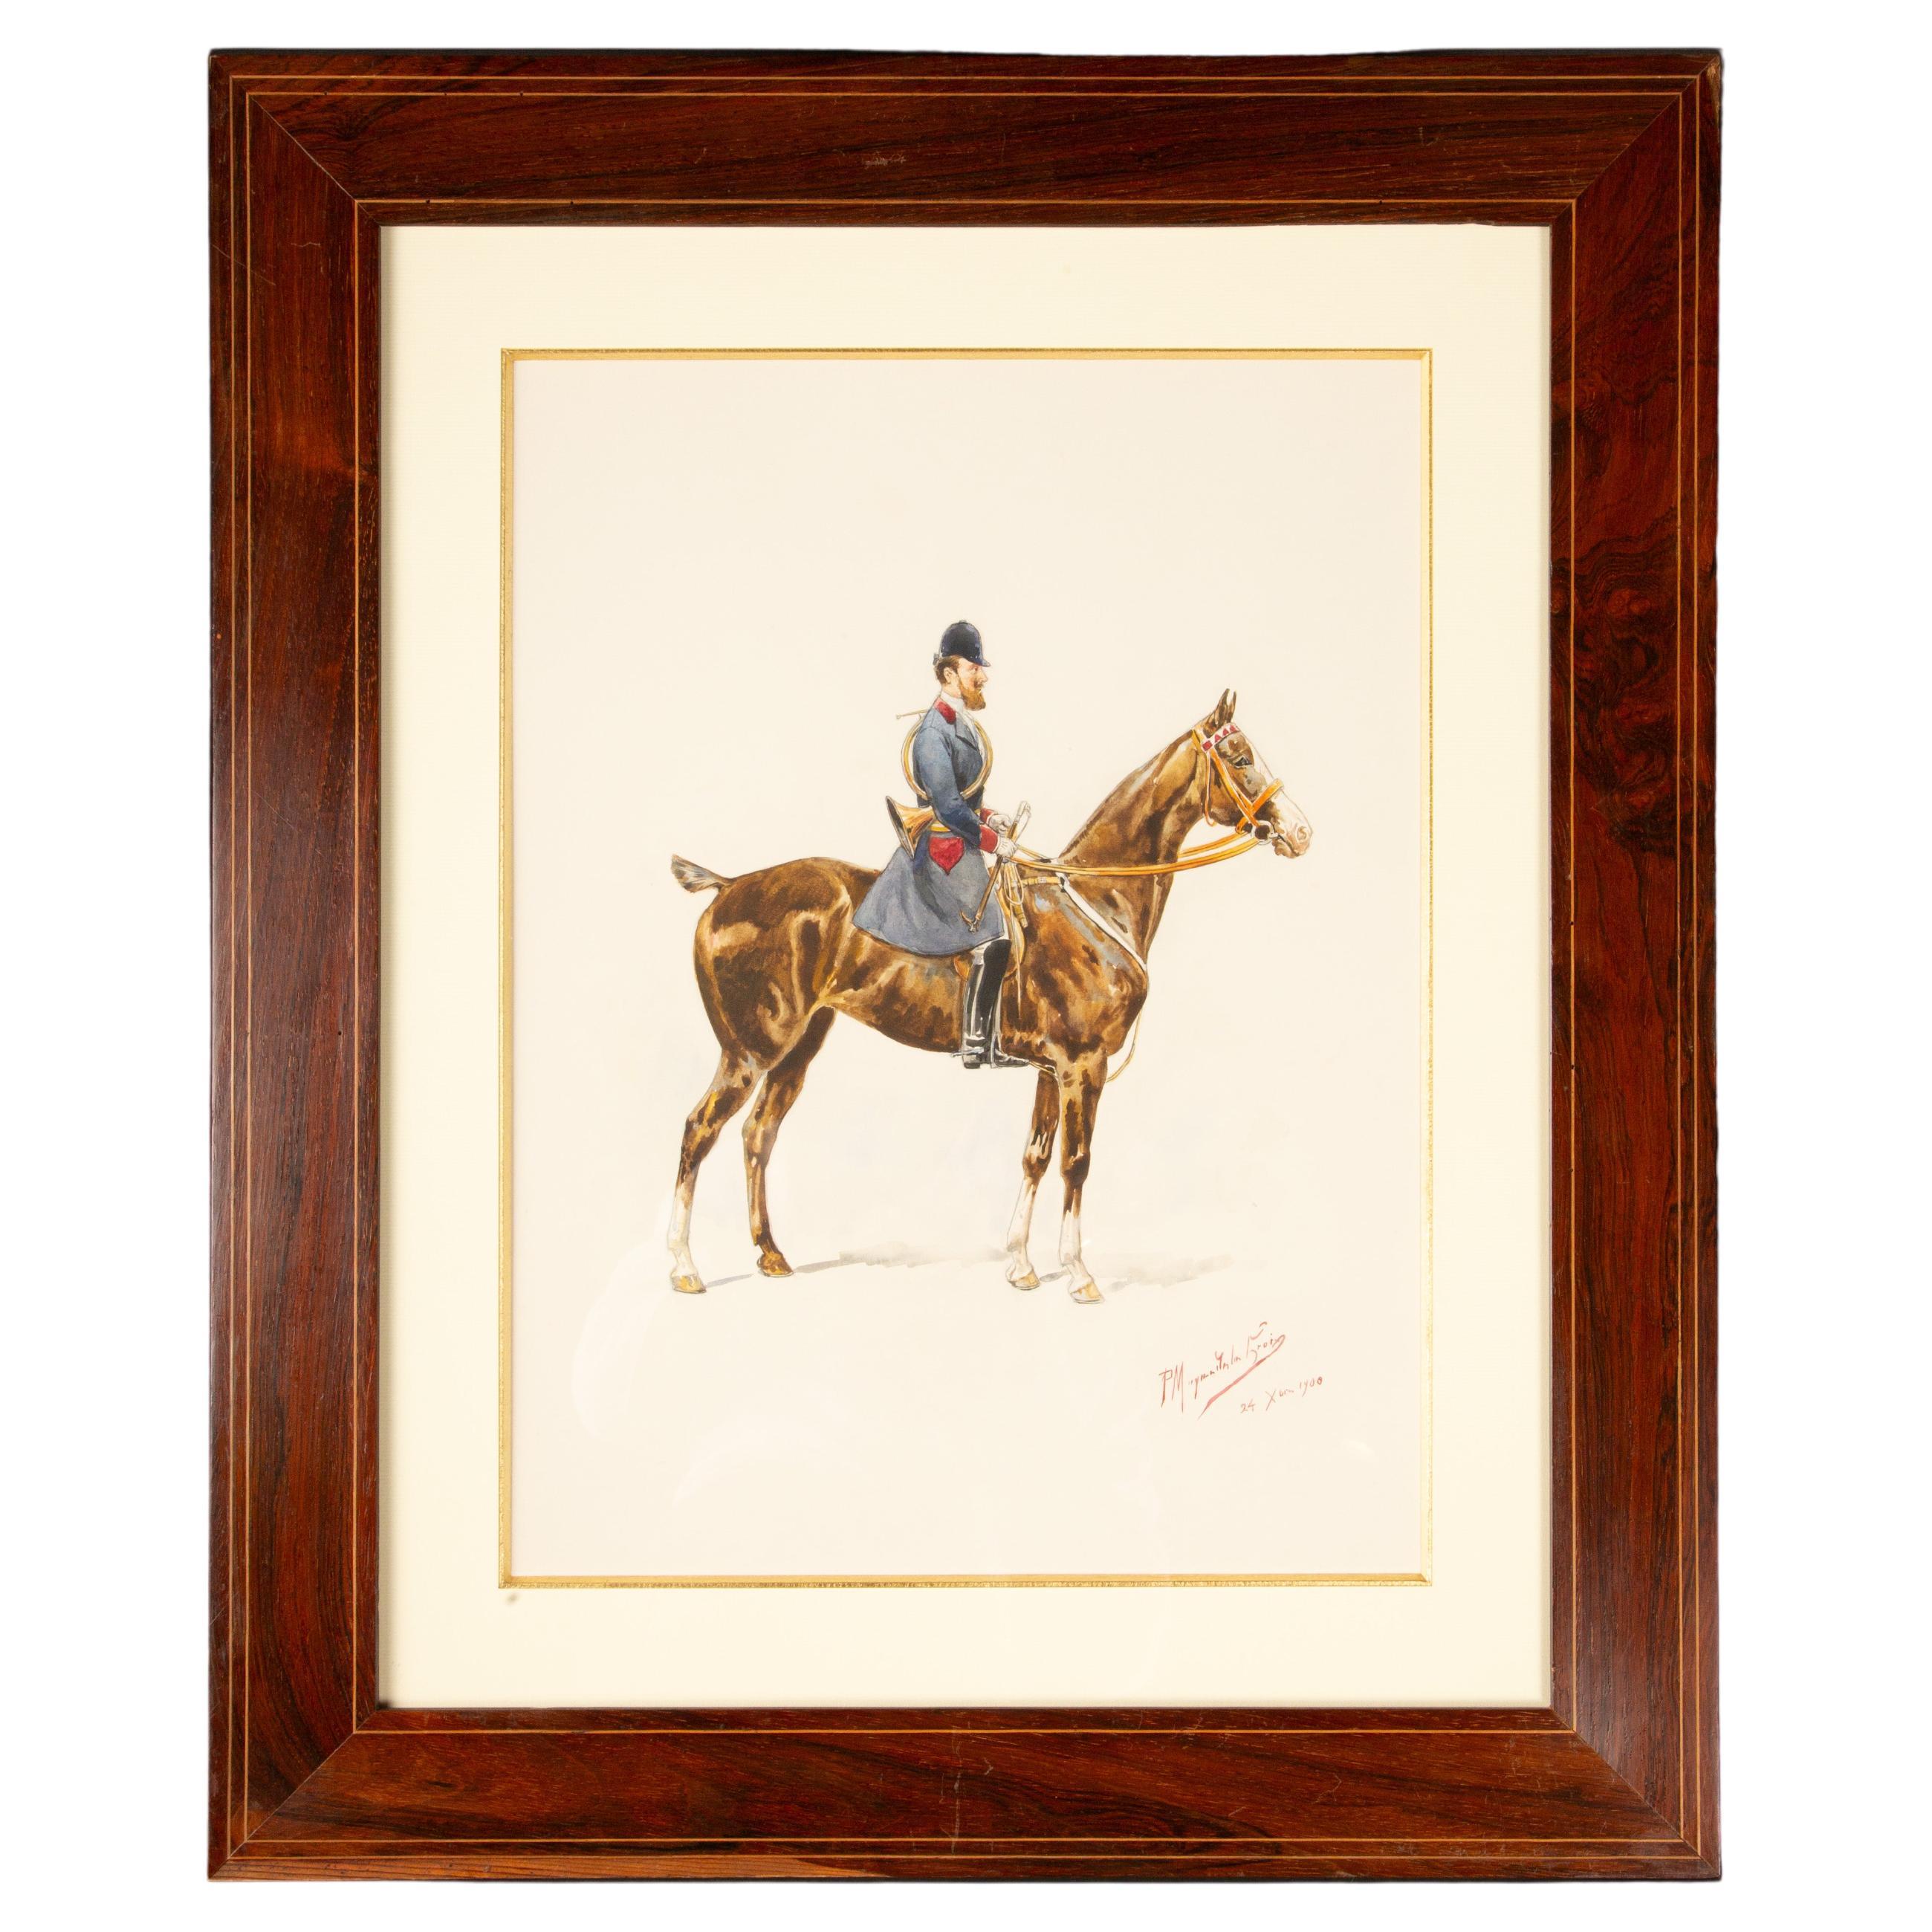 Timeless Equestrian Elegance: Paul Magne De La Croix's 1900 Watercolor 